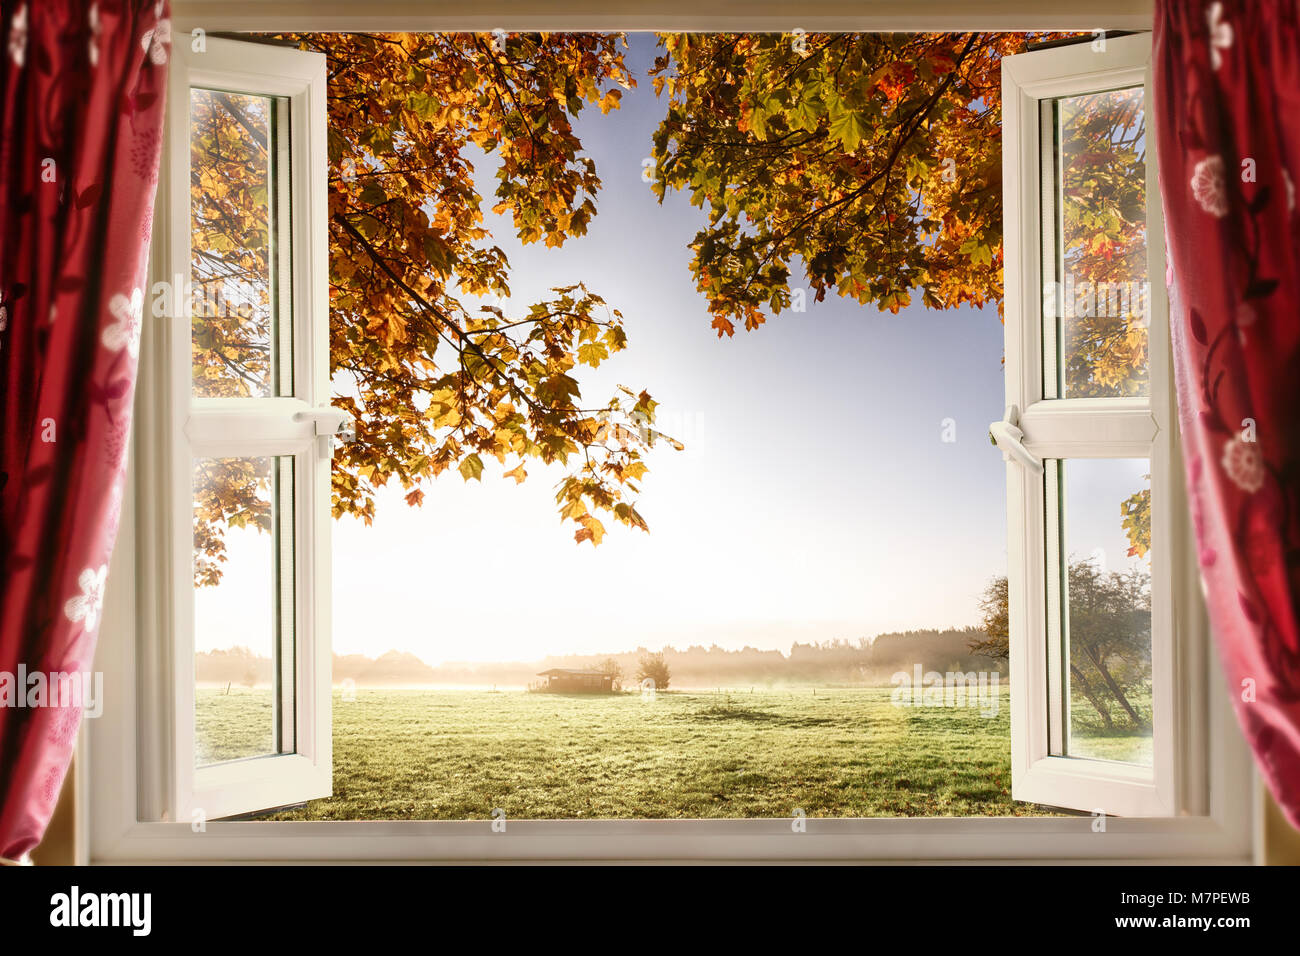 Ventana abierta con aire fresco y los paisajes rurales. Cortinas rojas muestran una ventana abierta en una casa moderna en una ubicación rural Foto de stock